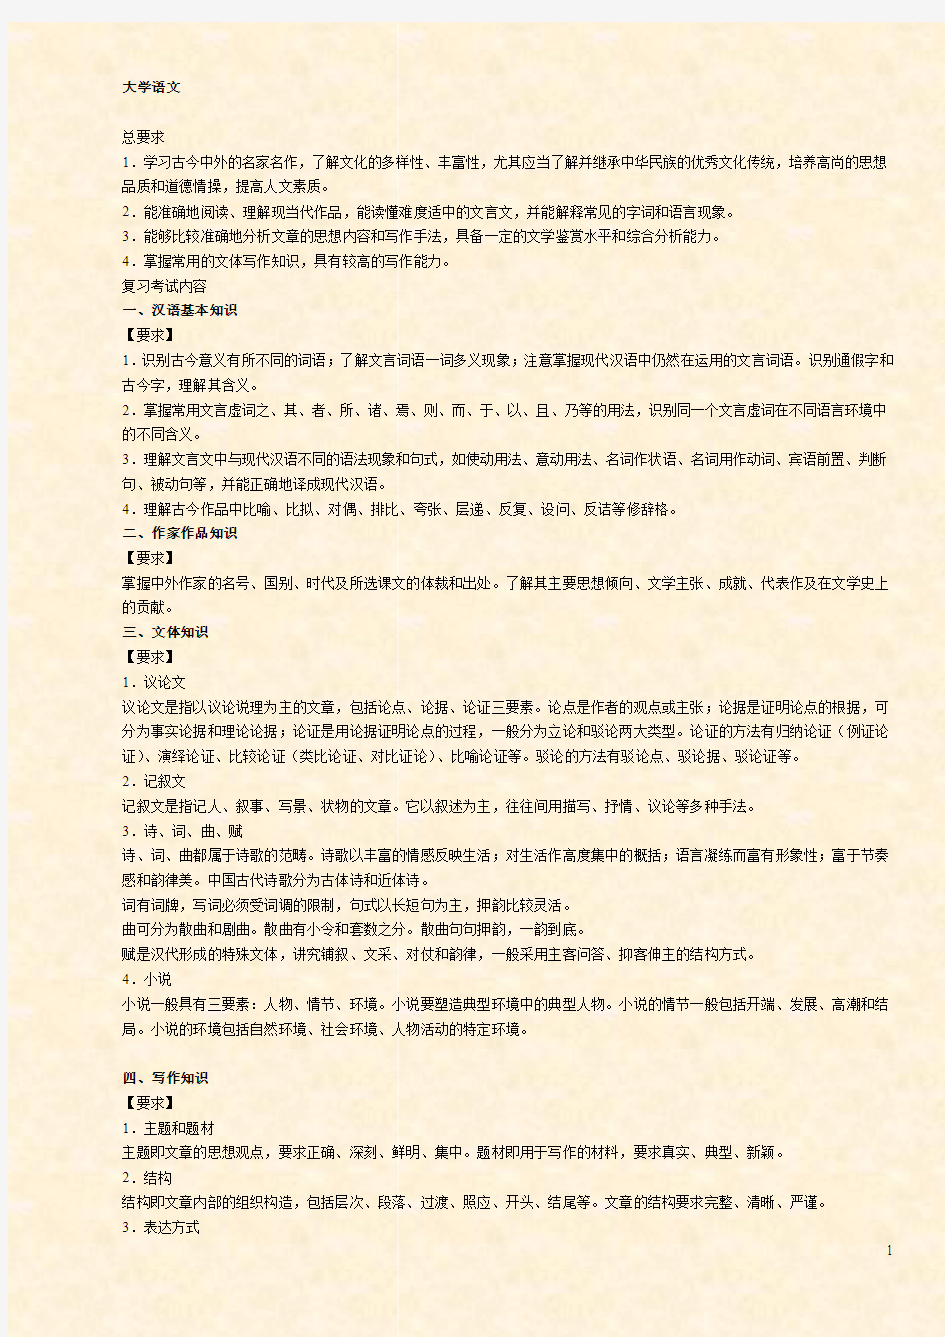 大学语文 - 自考365——中国权威专业的自考辅导网站!